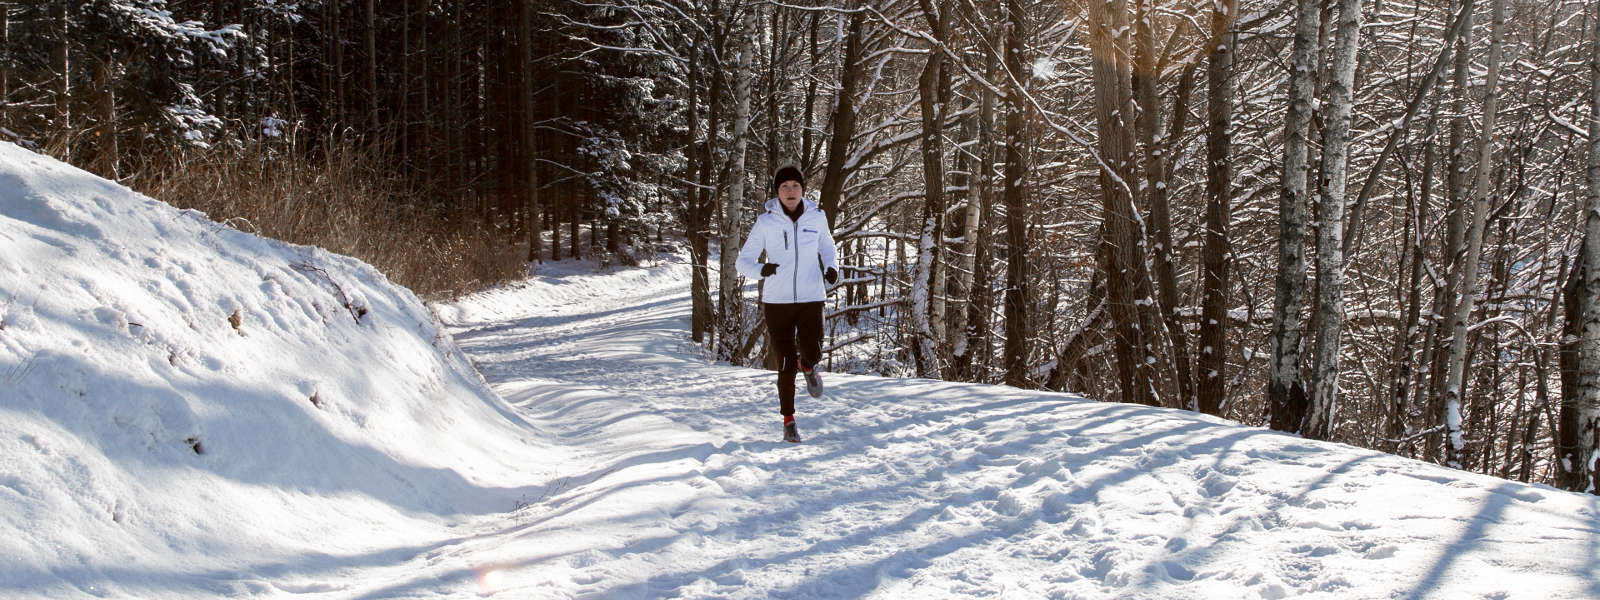 Frau in weißer Laufjacke joggt auf einem schneebedeckten Weg zwischen Bäumen und sieht in Richtung Kamera